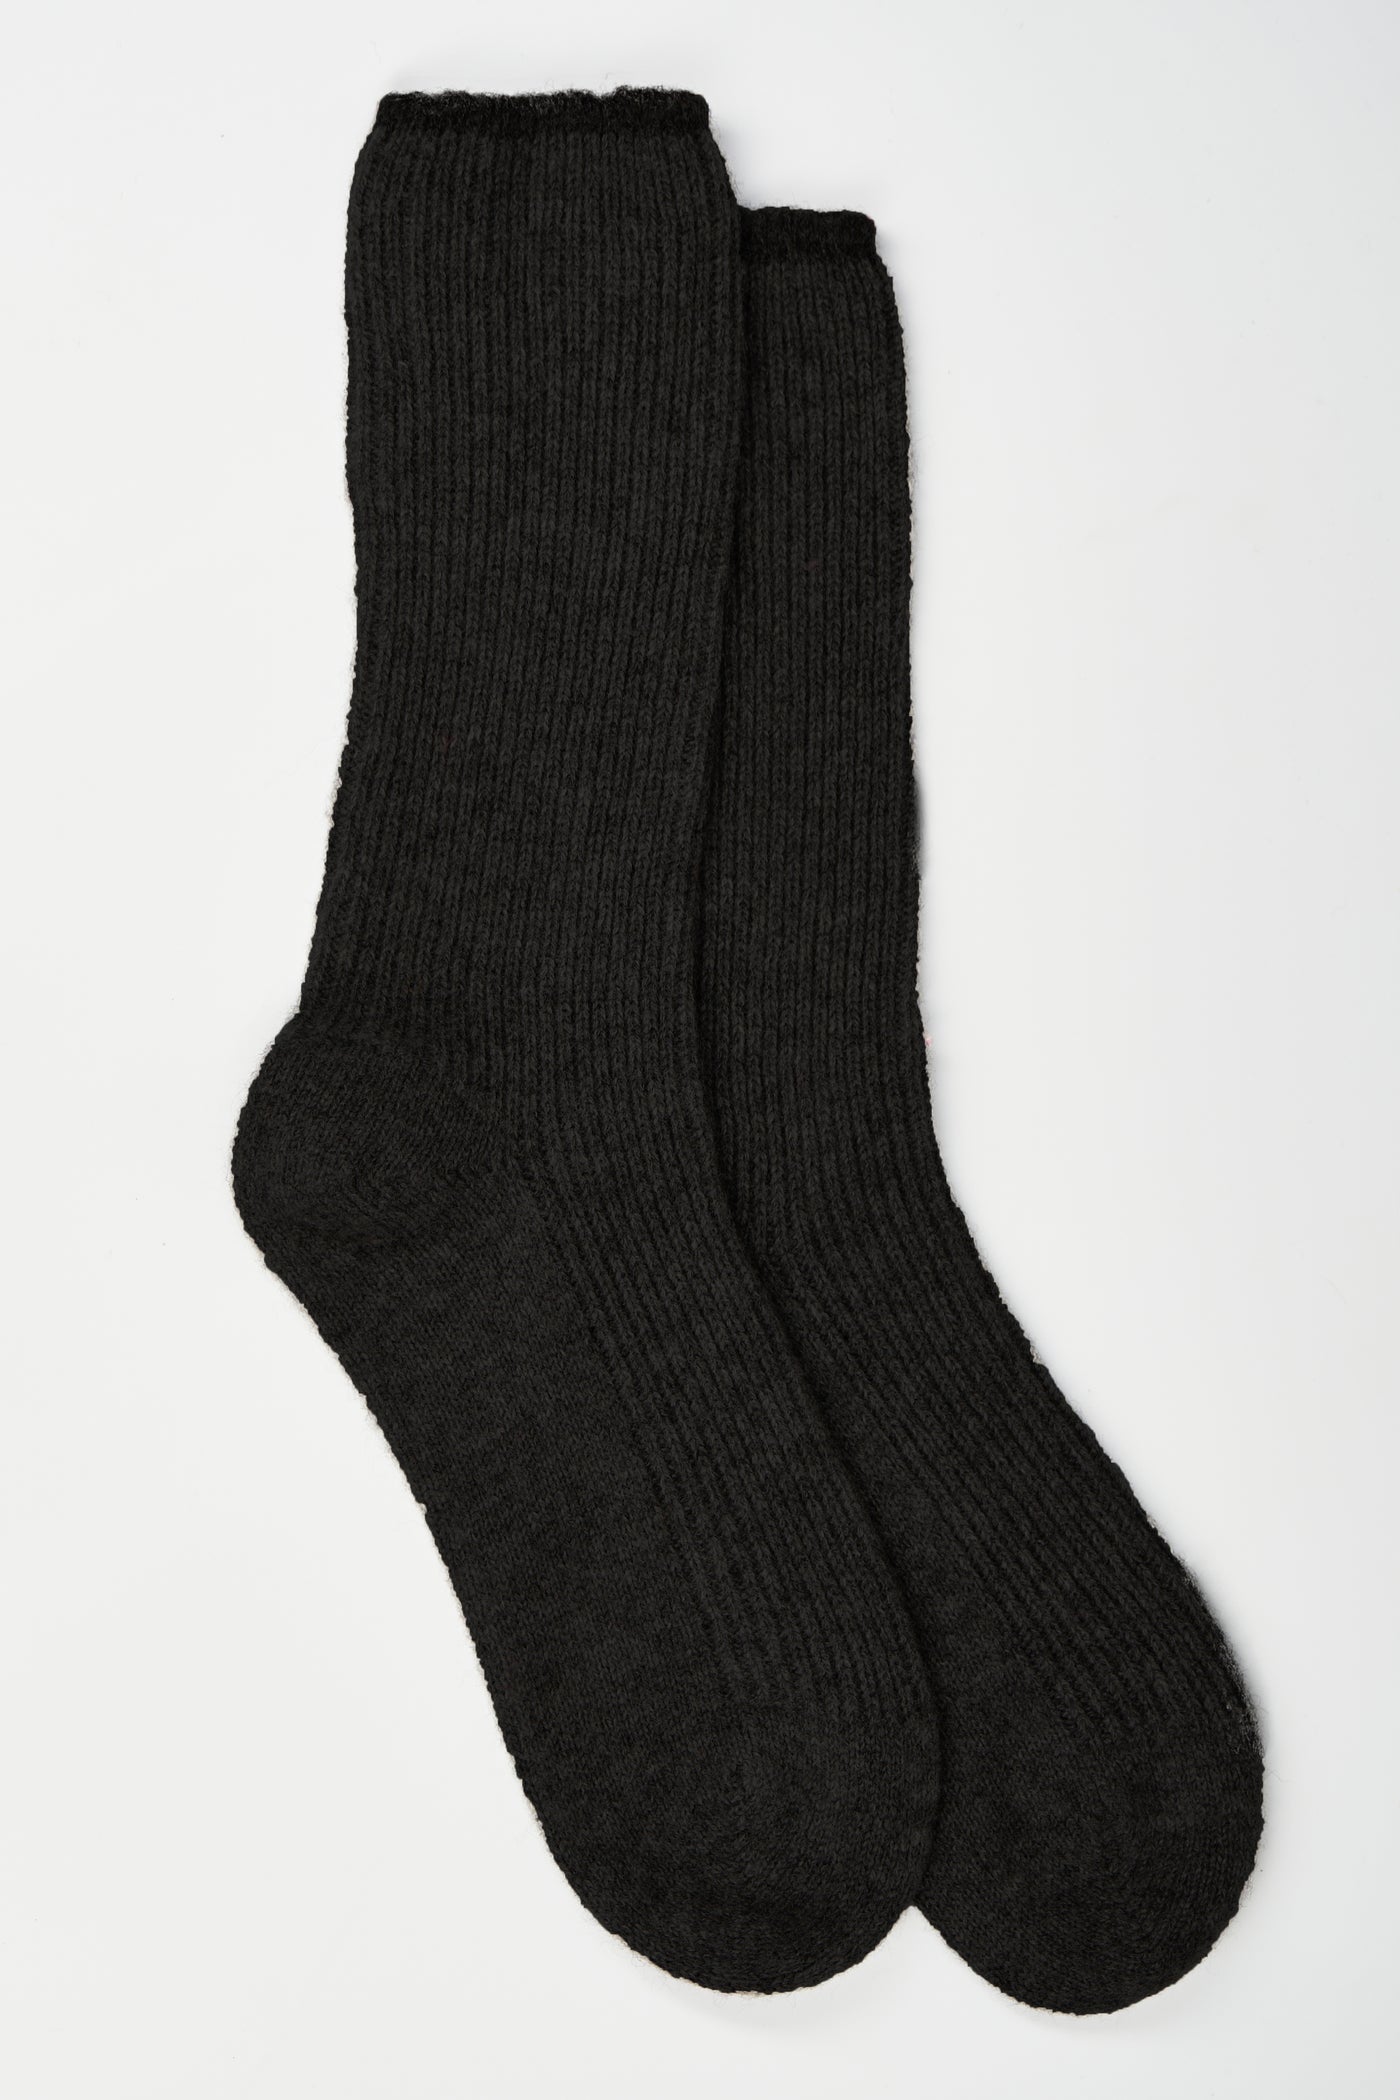 Brodie Cozy Bed Socks - Black